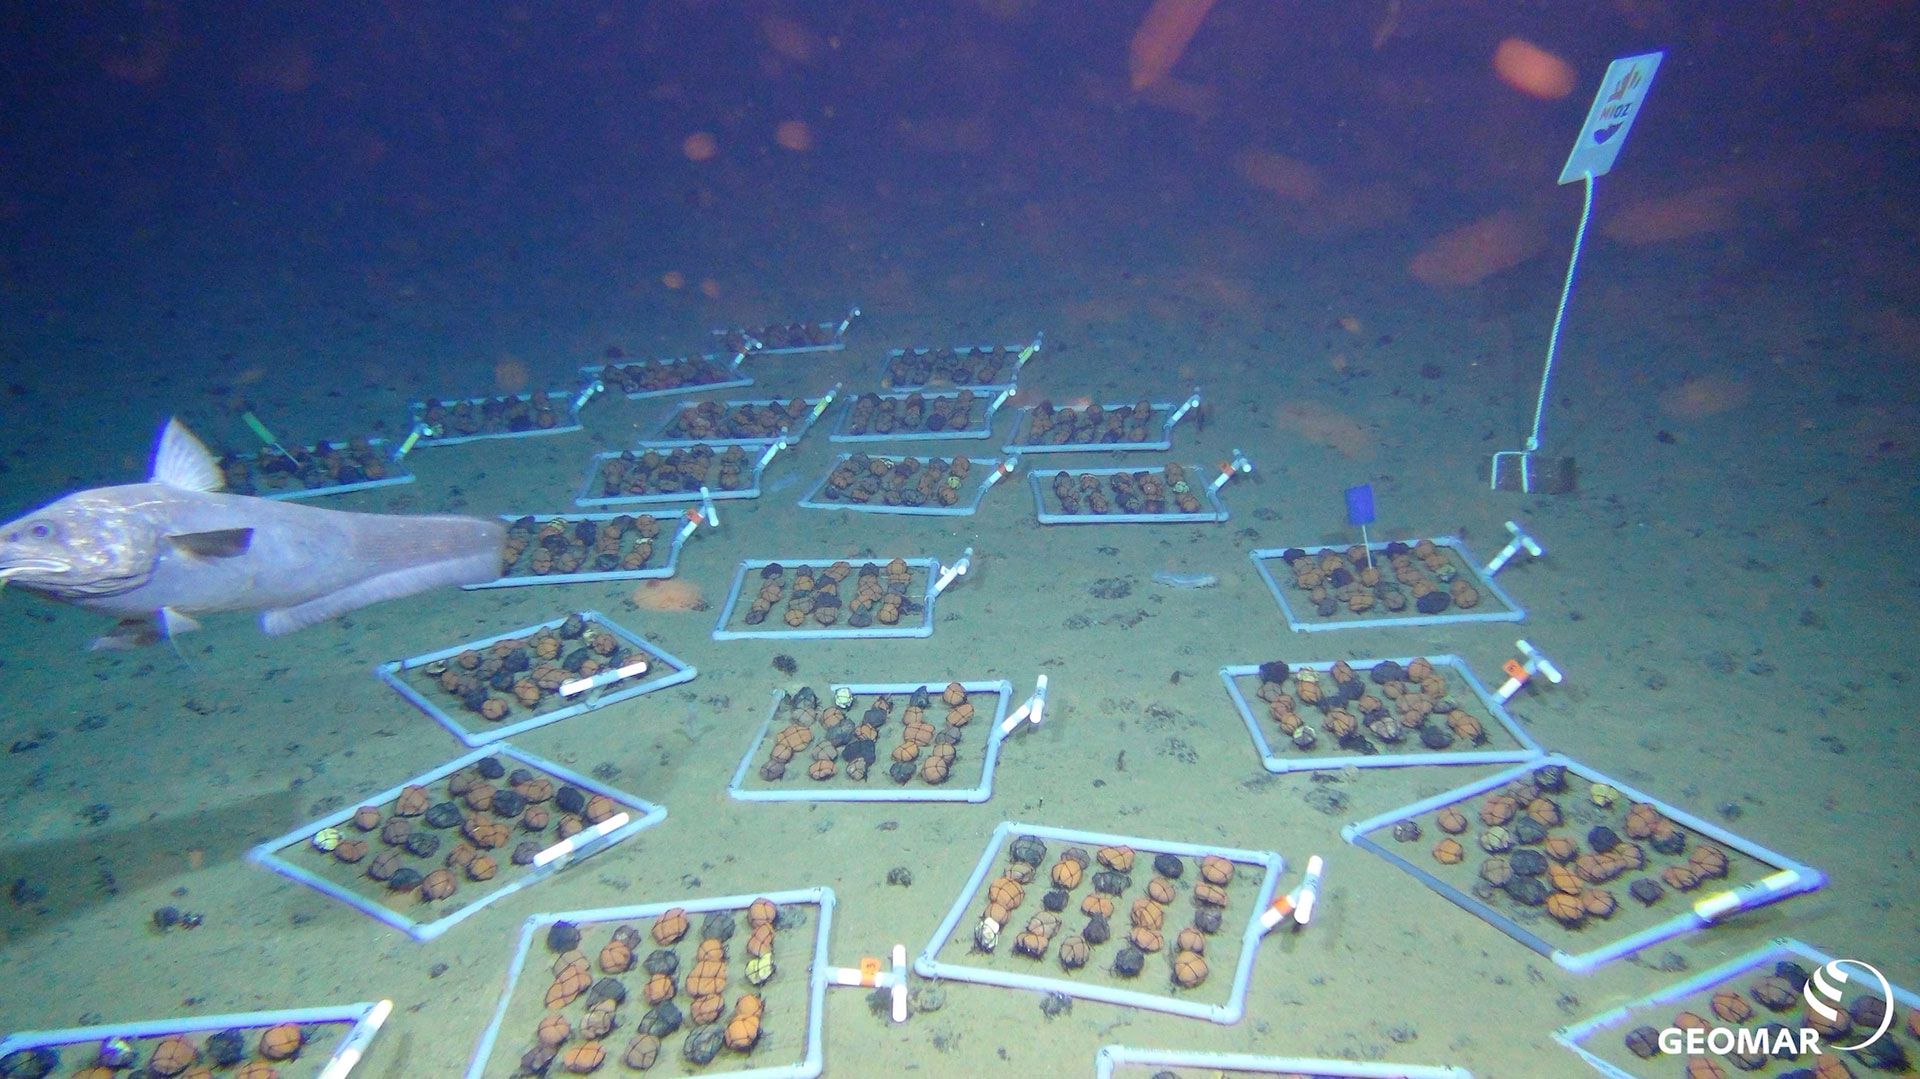 El ROV KIEL 6000 exploró el fondo marino de la zona Clarion-Clipperton para un proyecto que examina los efectos de la extracción de nódulos polimetálicos en los ecosistemas de aguas profundas. La imagen muestra "marcos de nódulos" para un experimento de repoblación (Equipo ROV/Geomar)